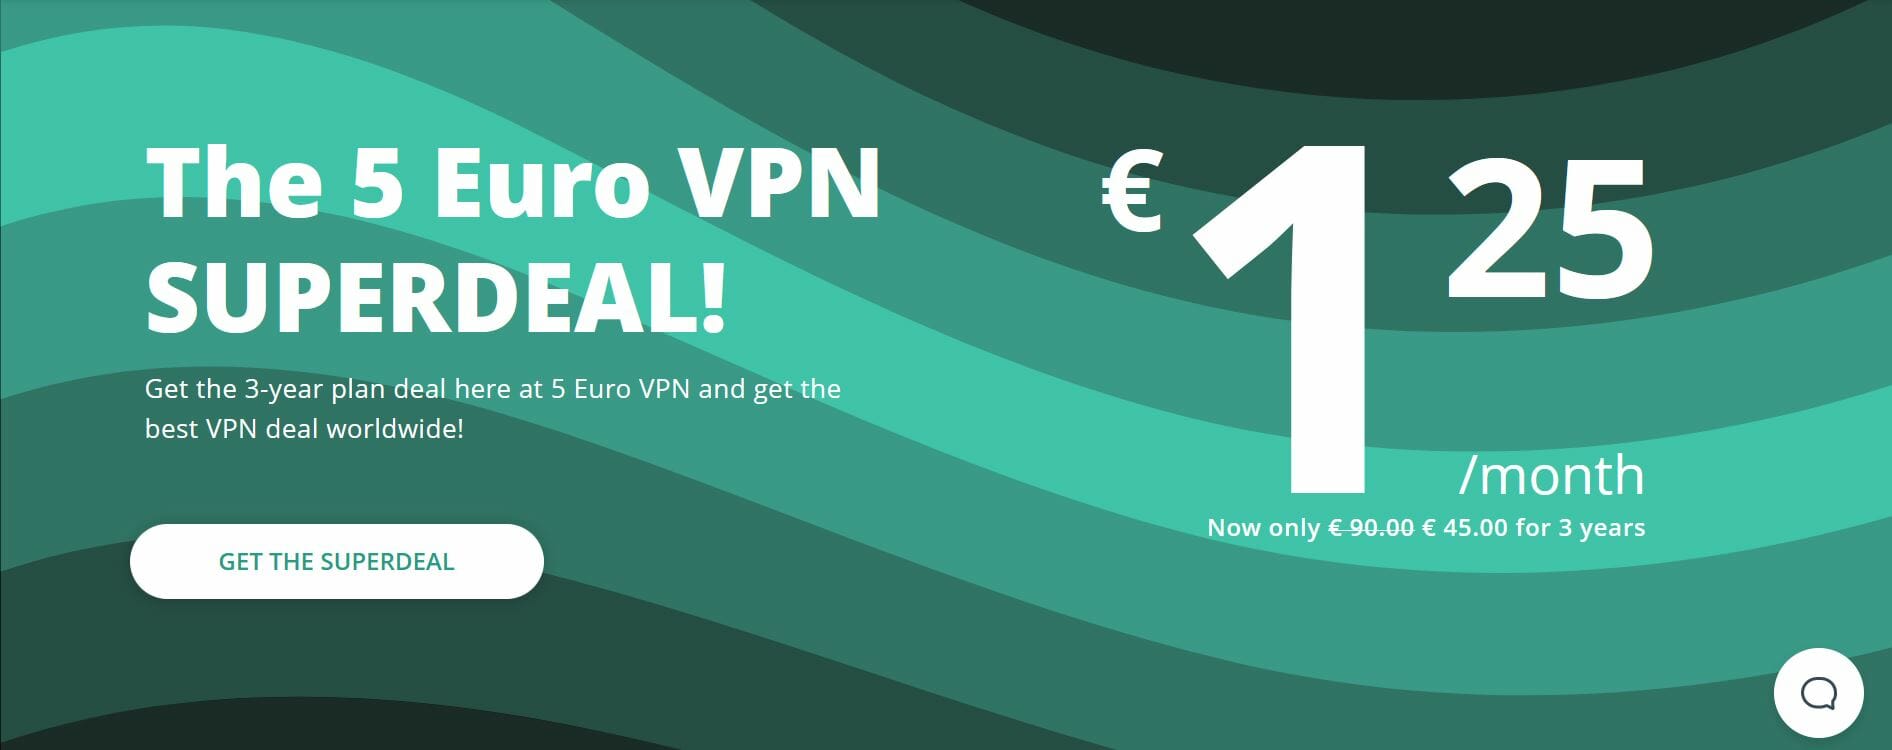 Abbonamento 5 Euro VPN più conveniente